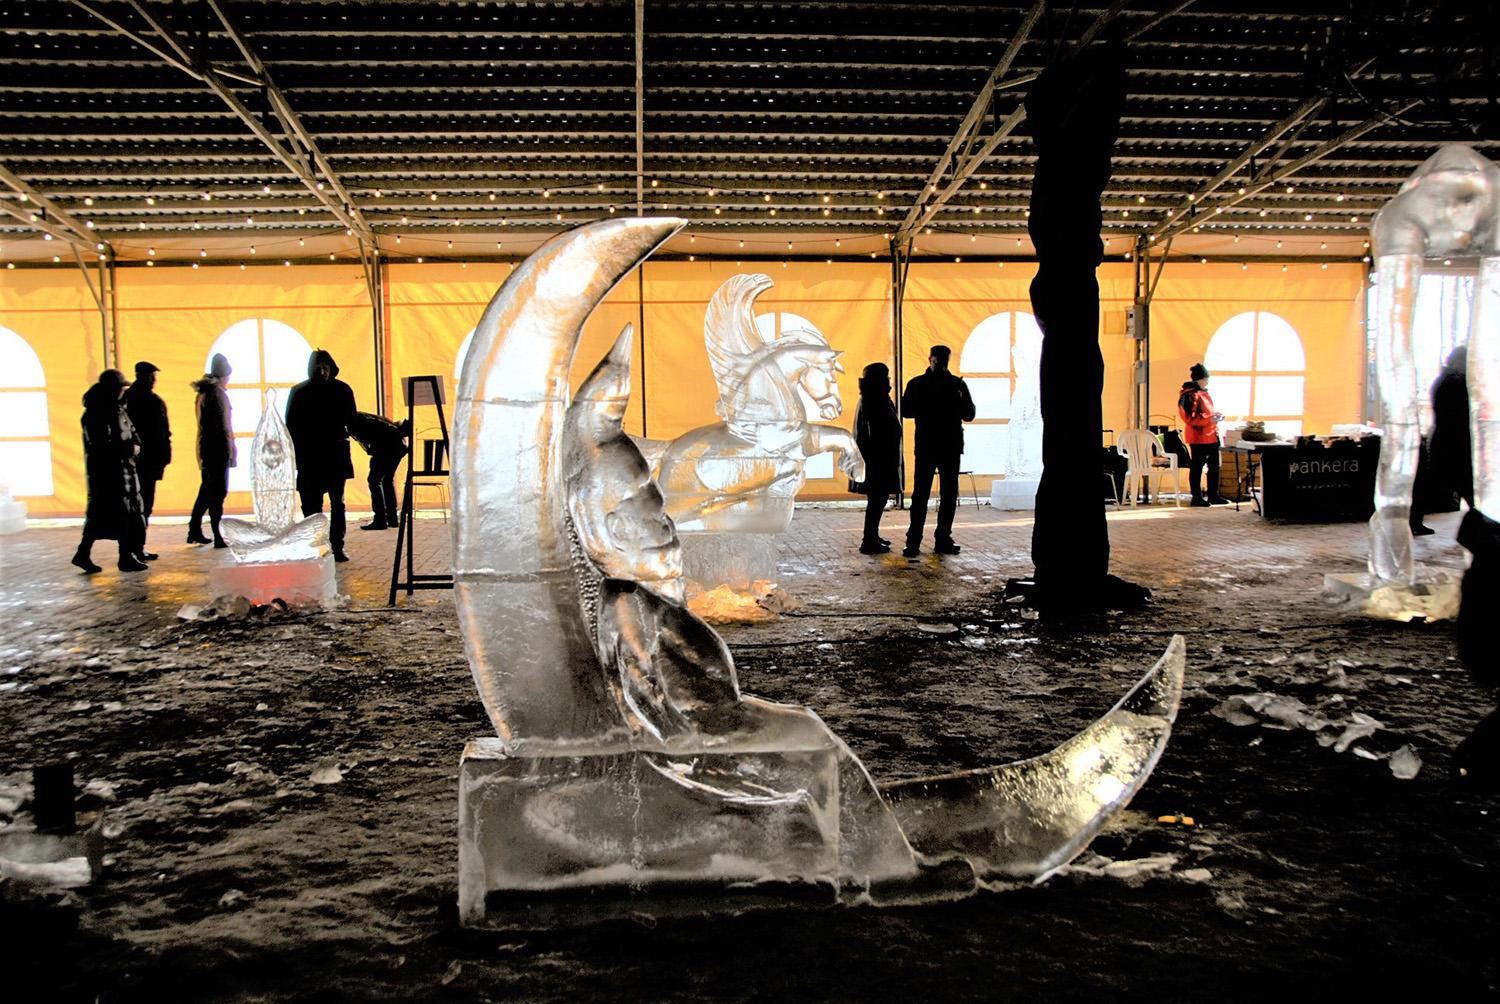 Taujėnų dvare akis užburia kūriniai iš ledo / Gedimino Nemunaičio nuotr. Taujėnų dvare eksponuojamos ledo skulptūros.